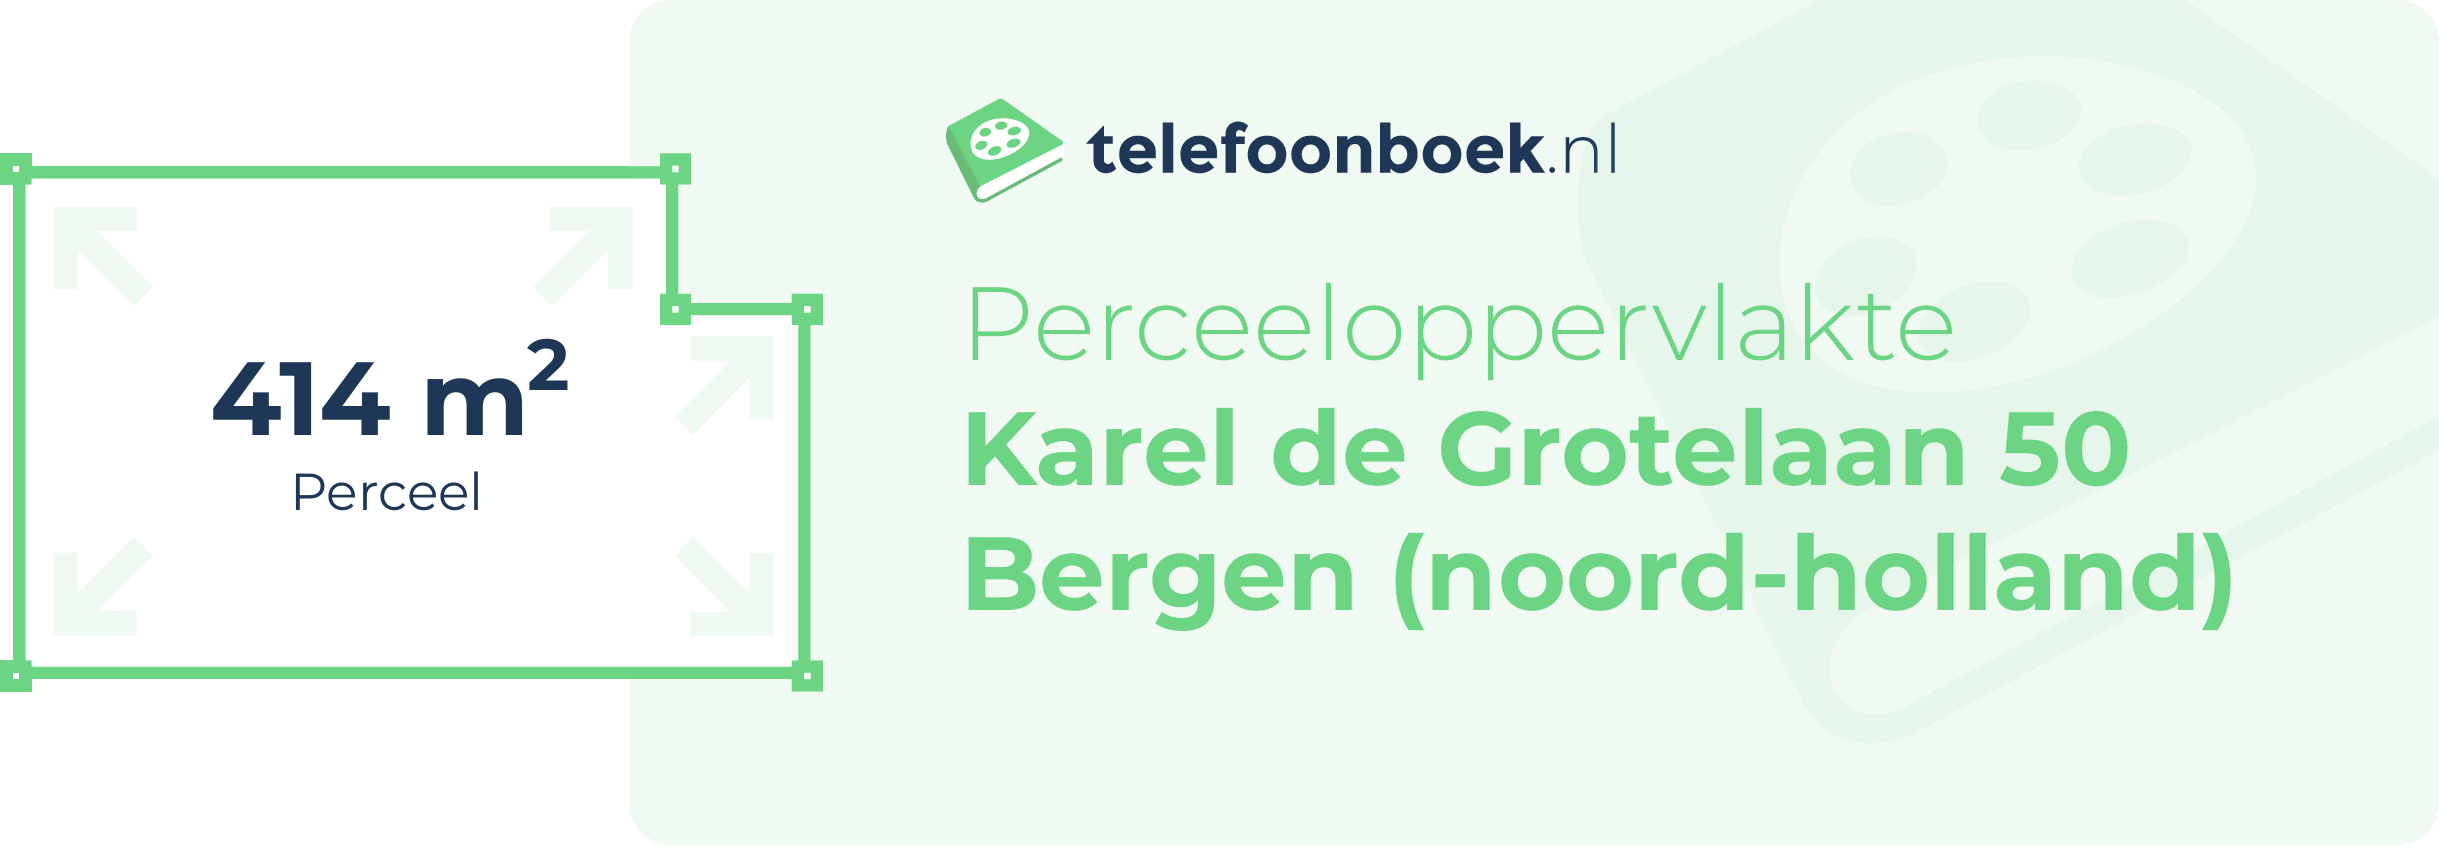 Perceeloppervlakte Karel De Grotelaan 50 Bergen (Noord-Holland)